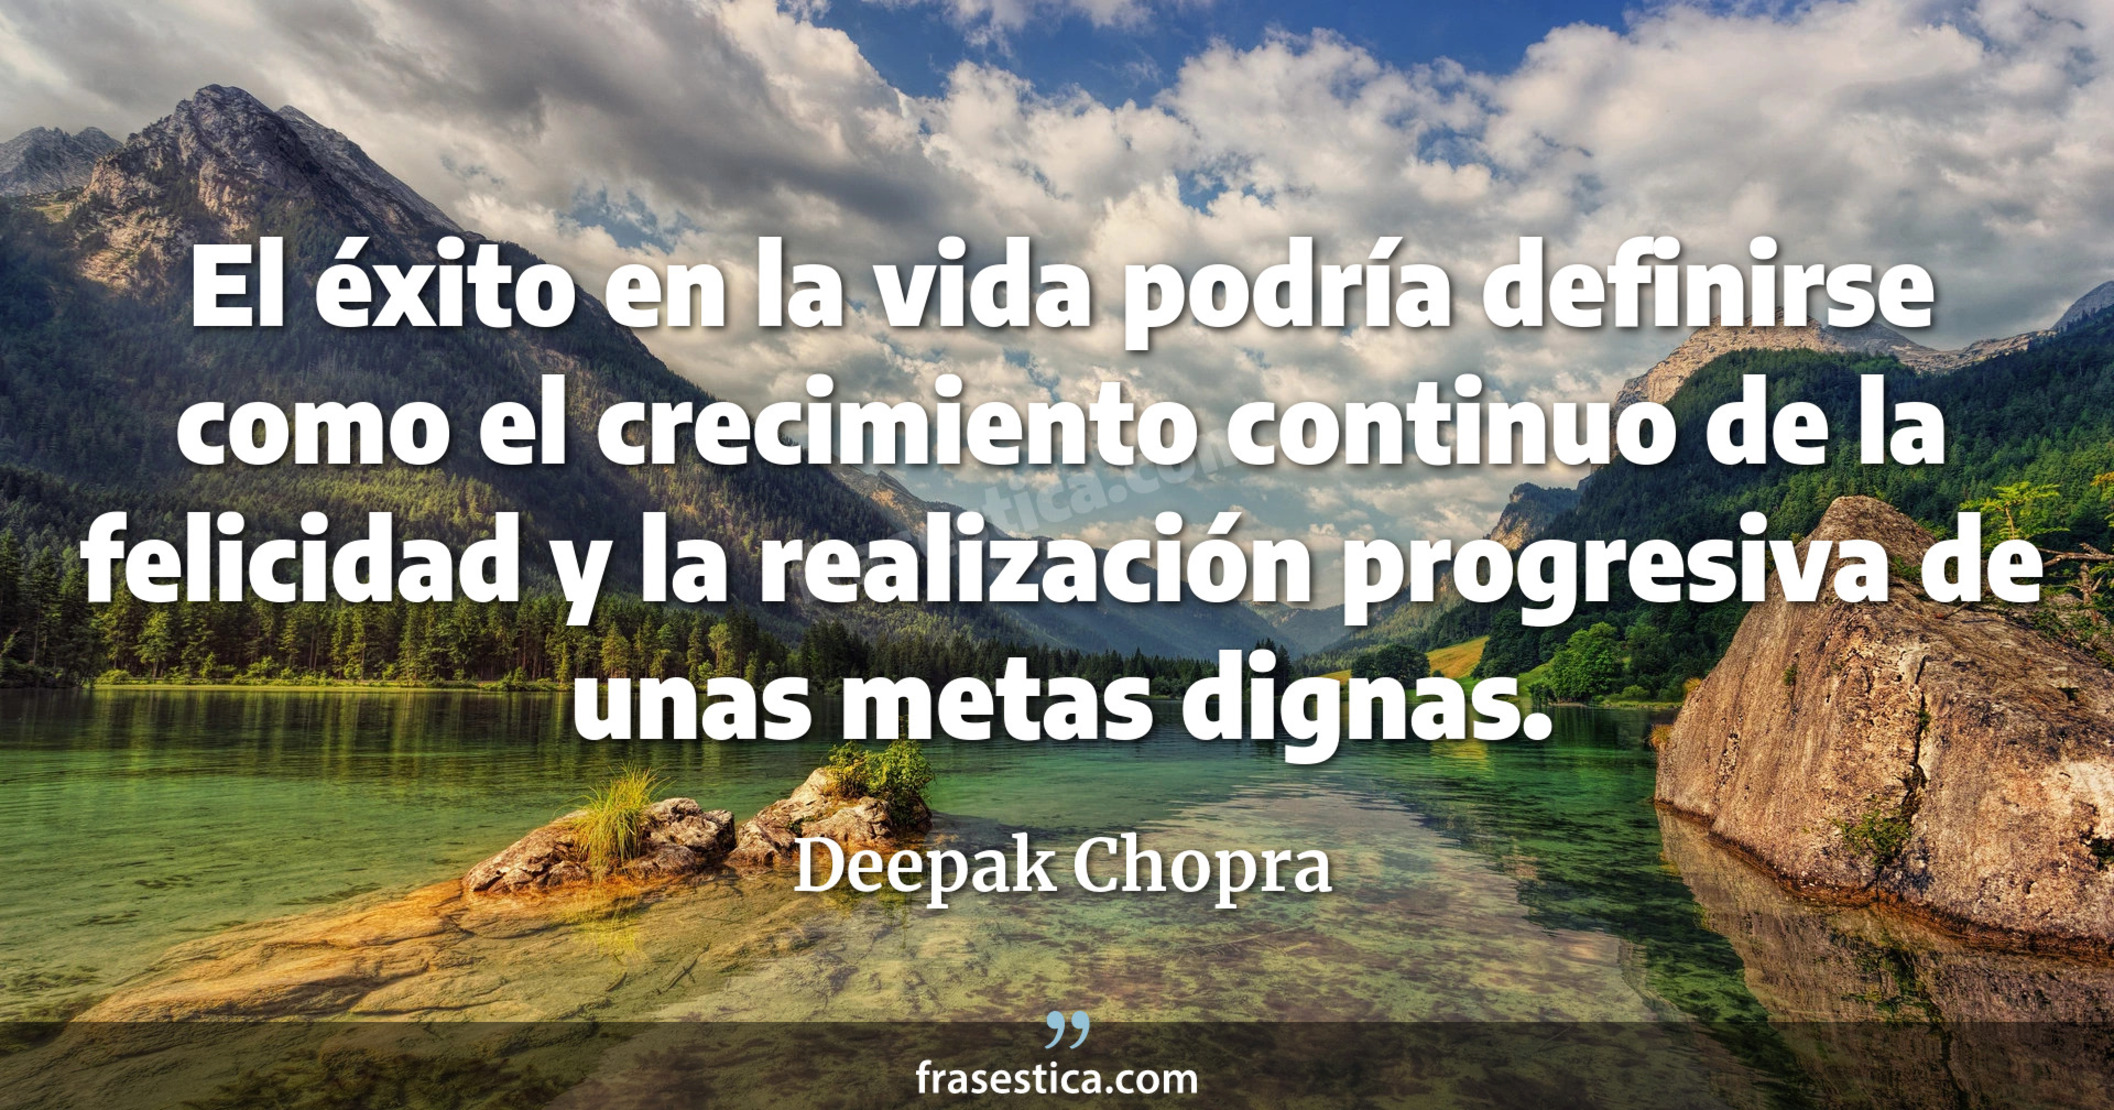 El éxito en la vida podría definirse como el crecimiento continuo de la felicidad y la realización progresiva de unas metas dignas. - Deepak Chopra